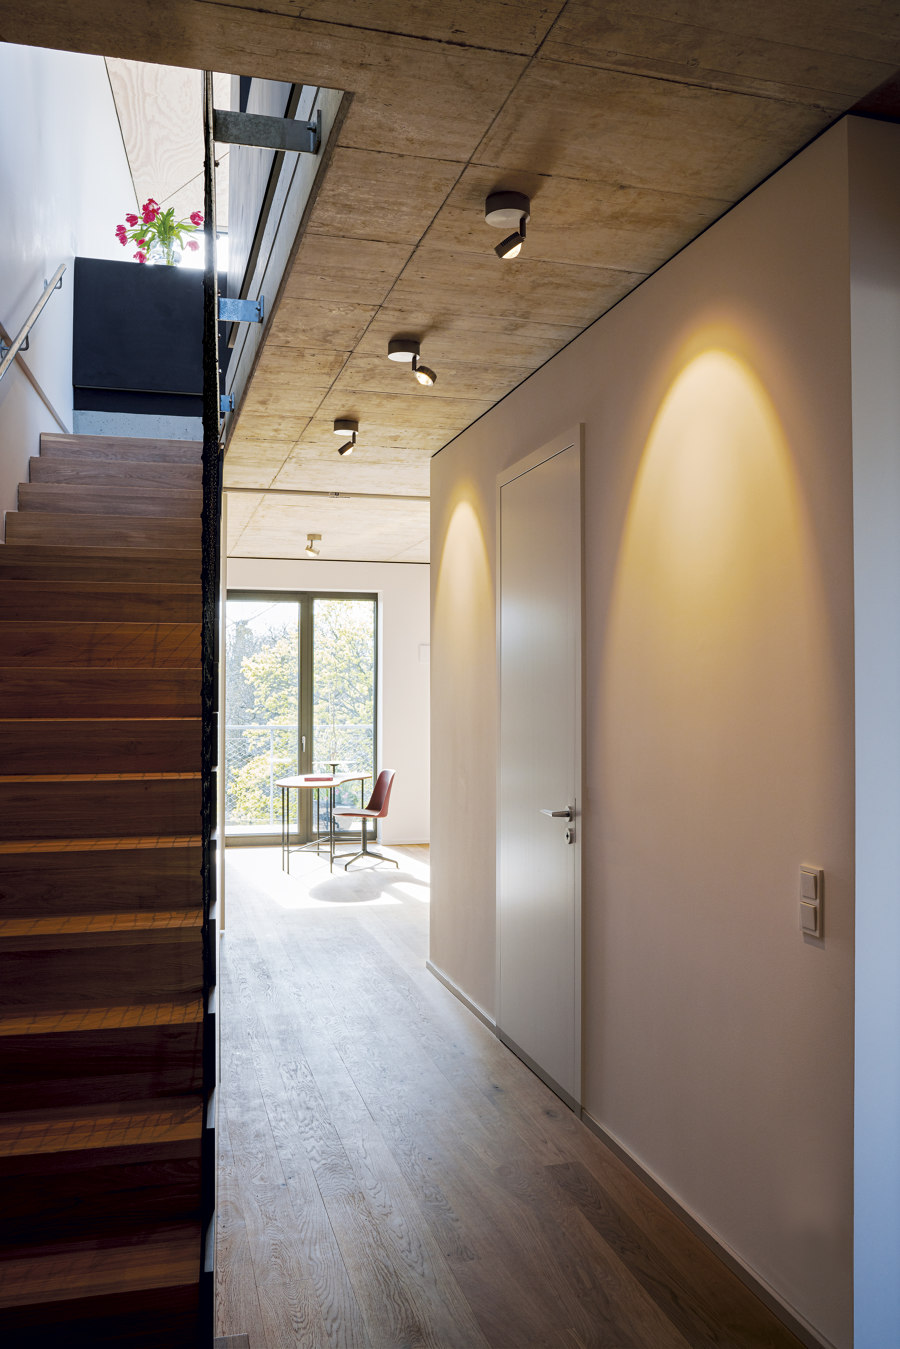 Penthouse mit Ausstrahlung: Licht im Raum stattet Dachaufbau aus | Aktuelles